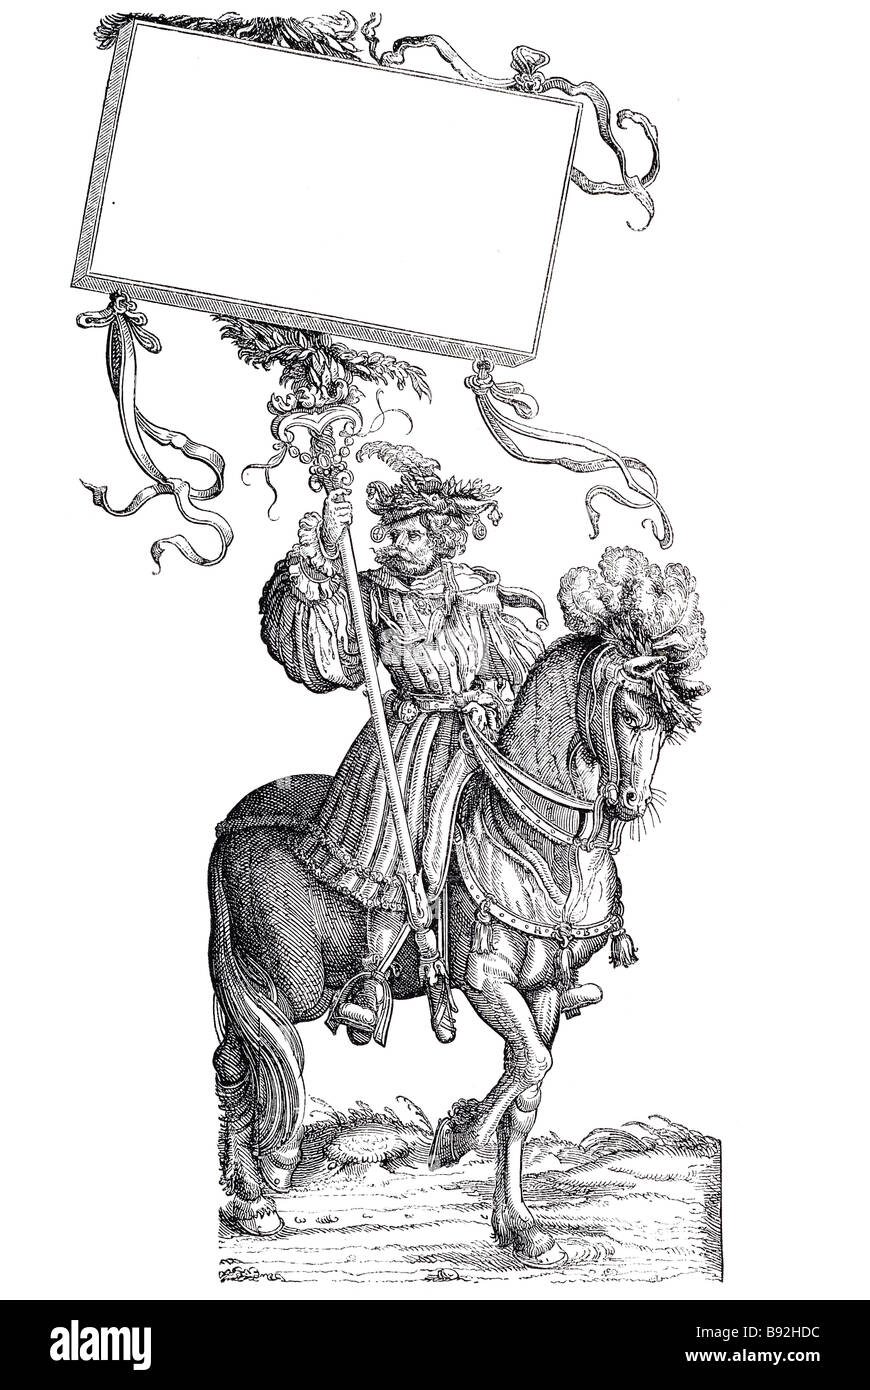 Burgmair il marchio soldato signore cavaliere vestito di periodo di equitazione abbigliamento tradizionale banner emblema corazza costume uomo equina Hans Foto Stock